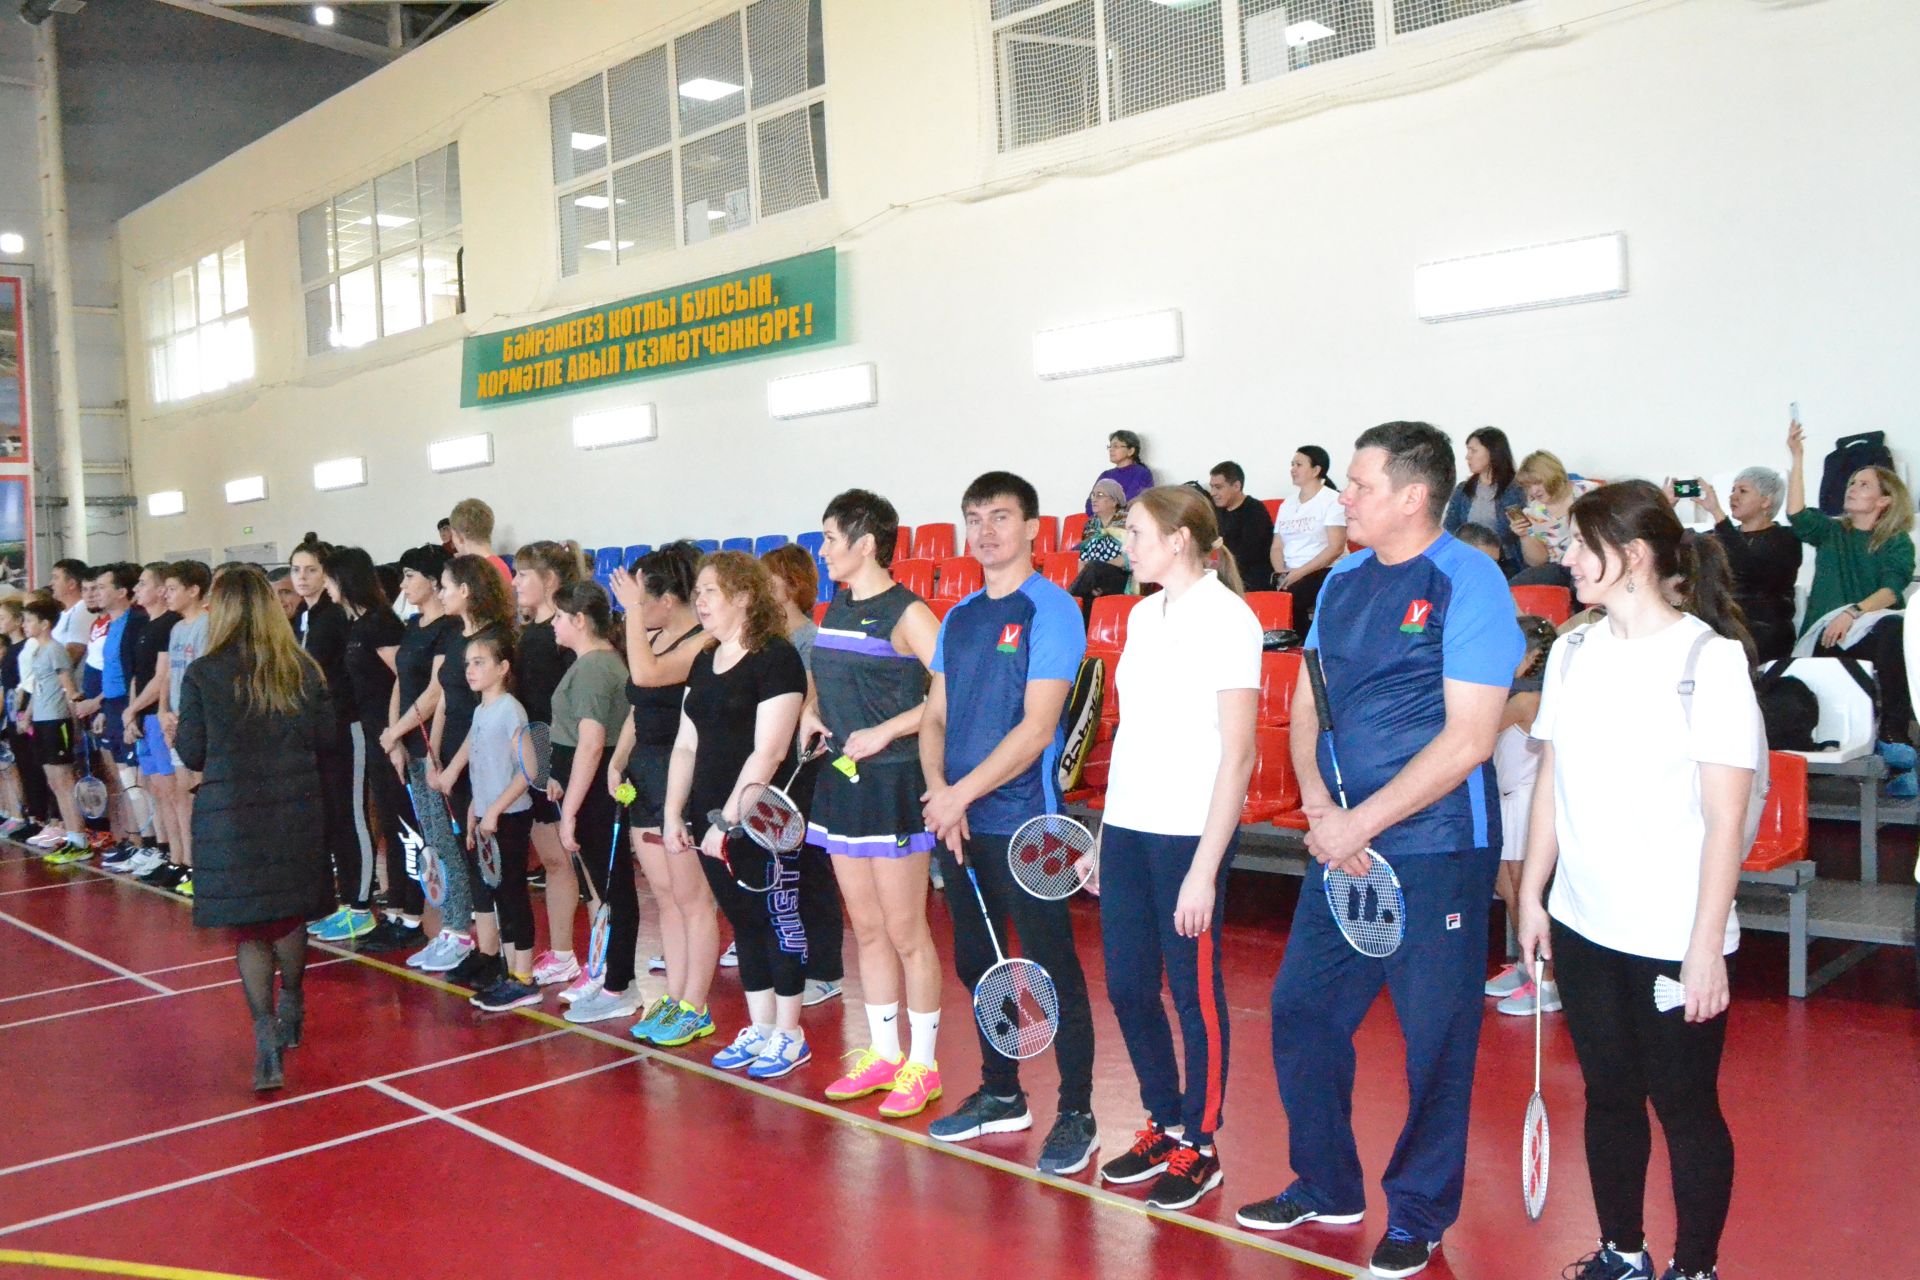 В Азнакаево проходят районные соревнования по бадминтону (ФОТО+ВИДЕО)